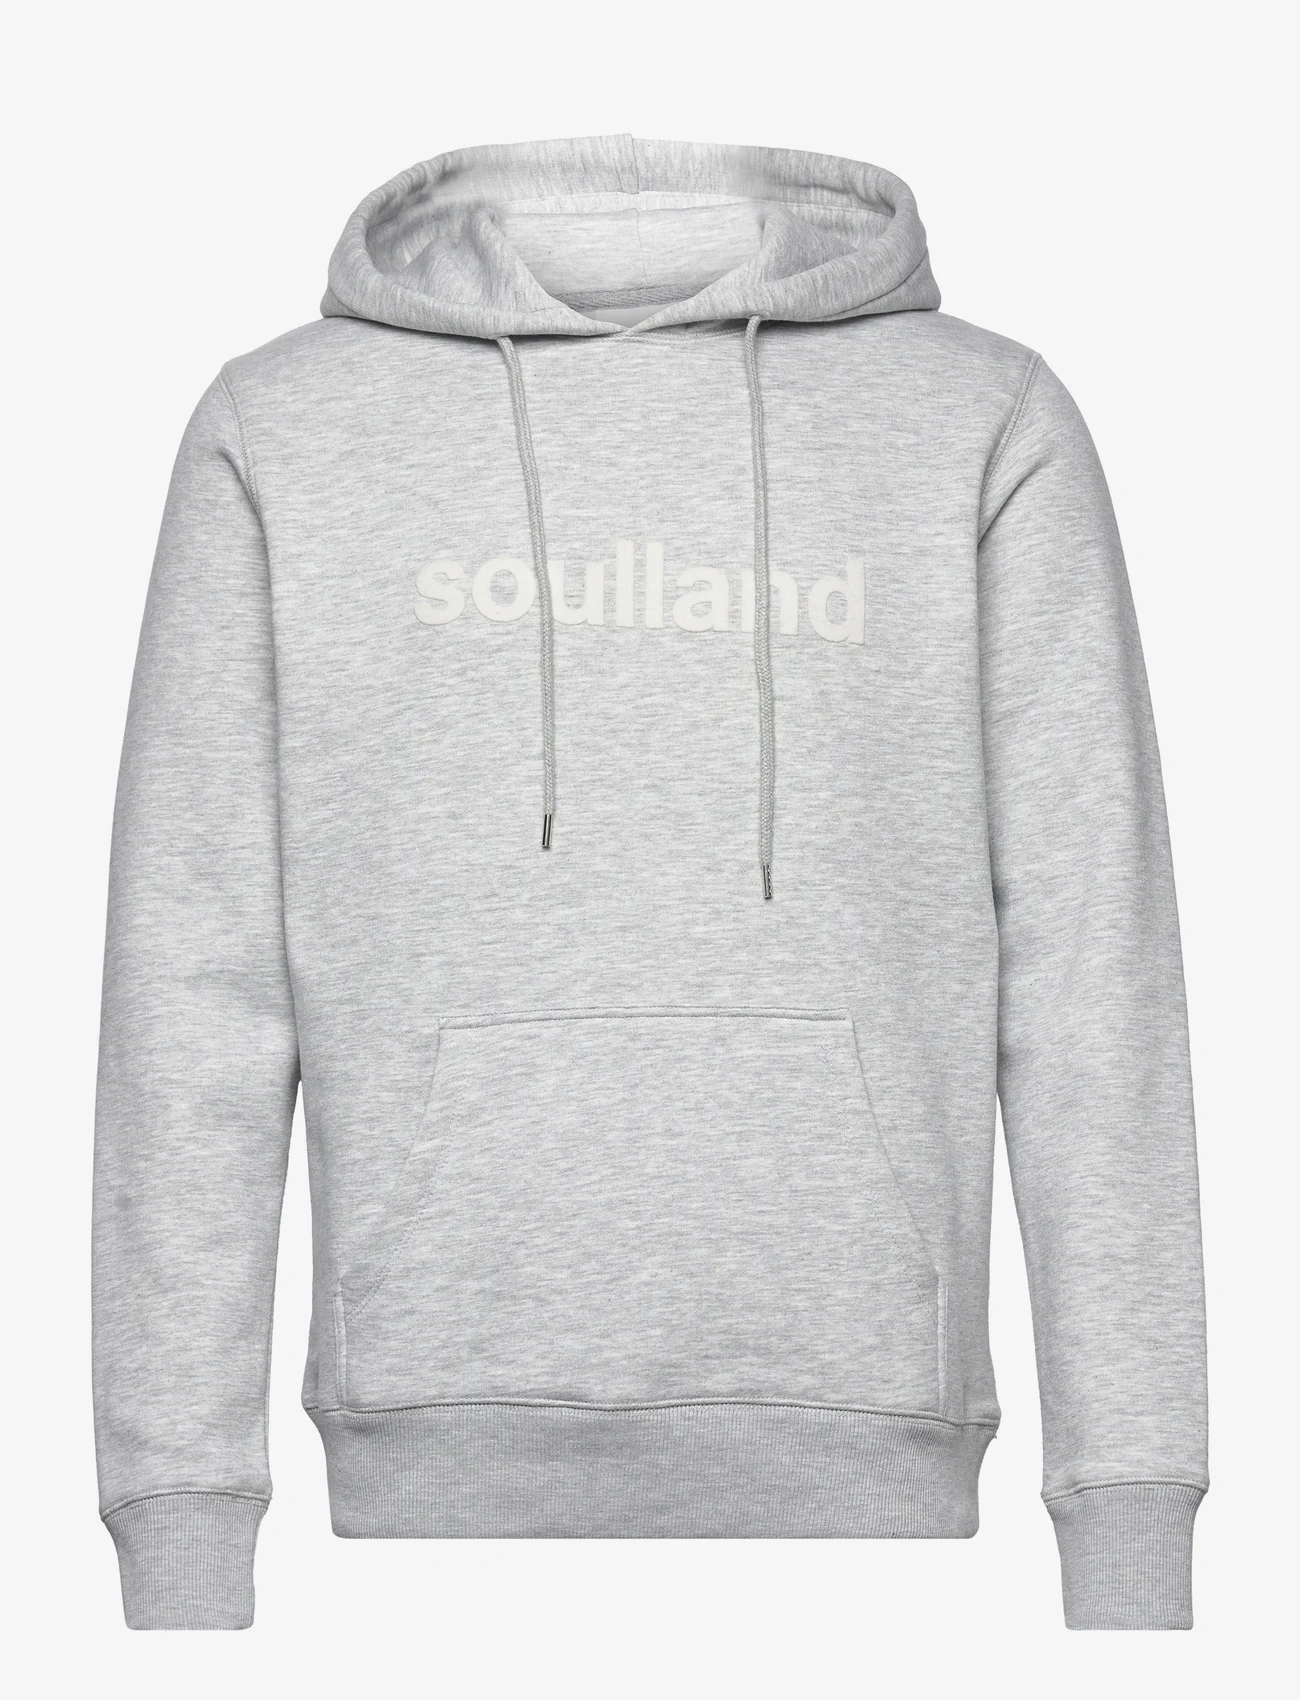 Soulland - Googie hoodie - bluzy z kapturem - grey melange - 0